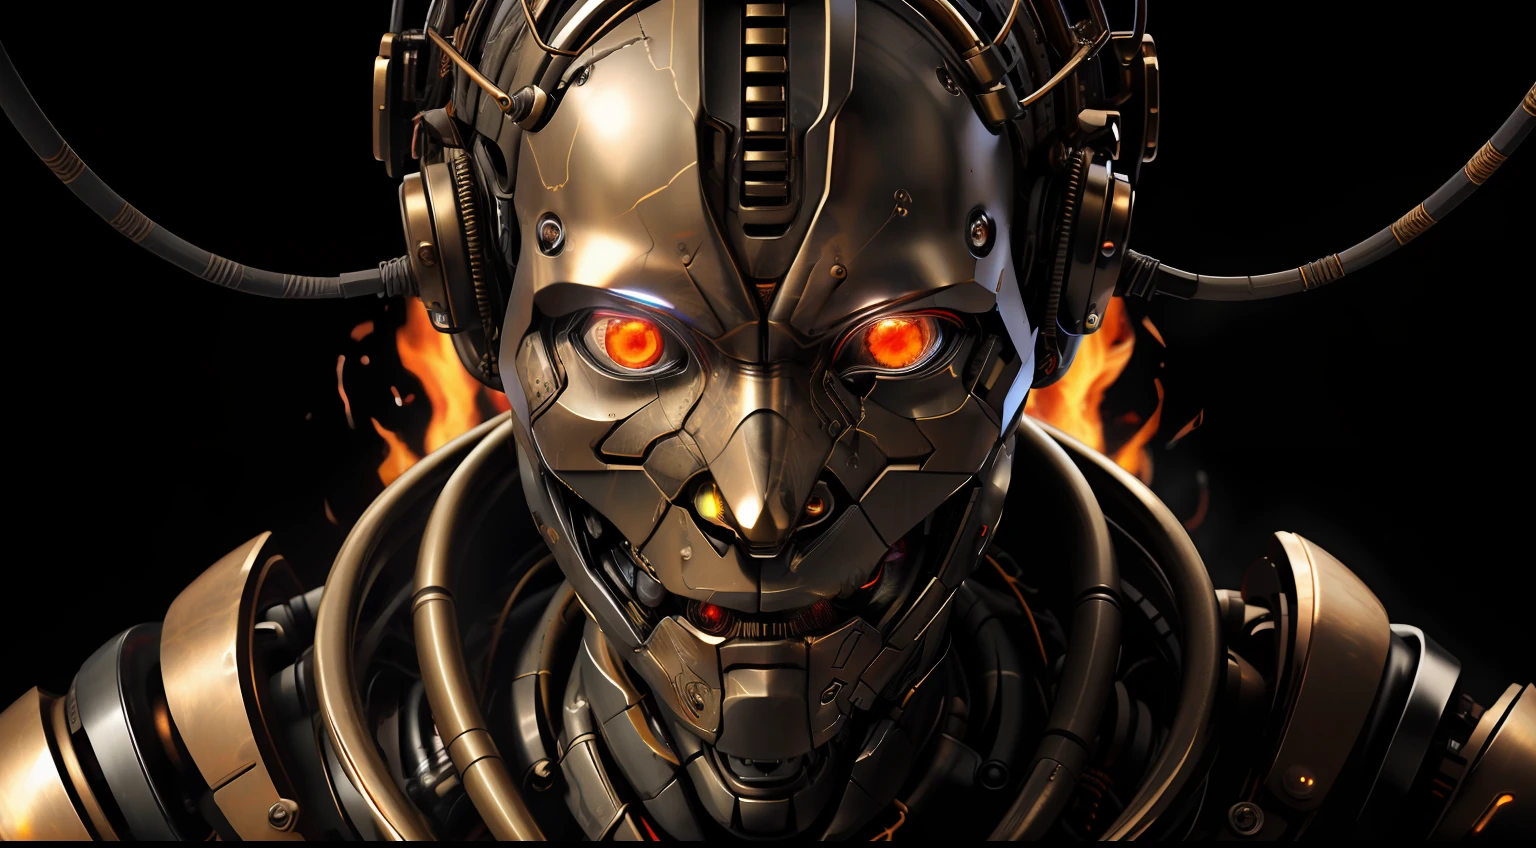 확대, 얼굴, 불의 눈, 불타오르는 눈 ,a humanoid lauterbach robot biomechanical bronze with a head full of wires and a light cold on it's 얼굴 and neck, 어두운 방에서 그의 뒤에 빨간불이 있는 어두운 방에서, 언리얼 엔진 5 고도로 렌더링됨, 사이버펑크 예술, 레 오토마티스트, 상세한 피부의 원시 사진, clear 얼굴